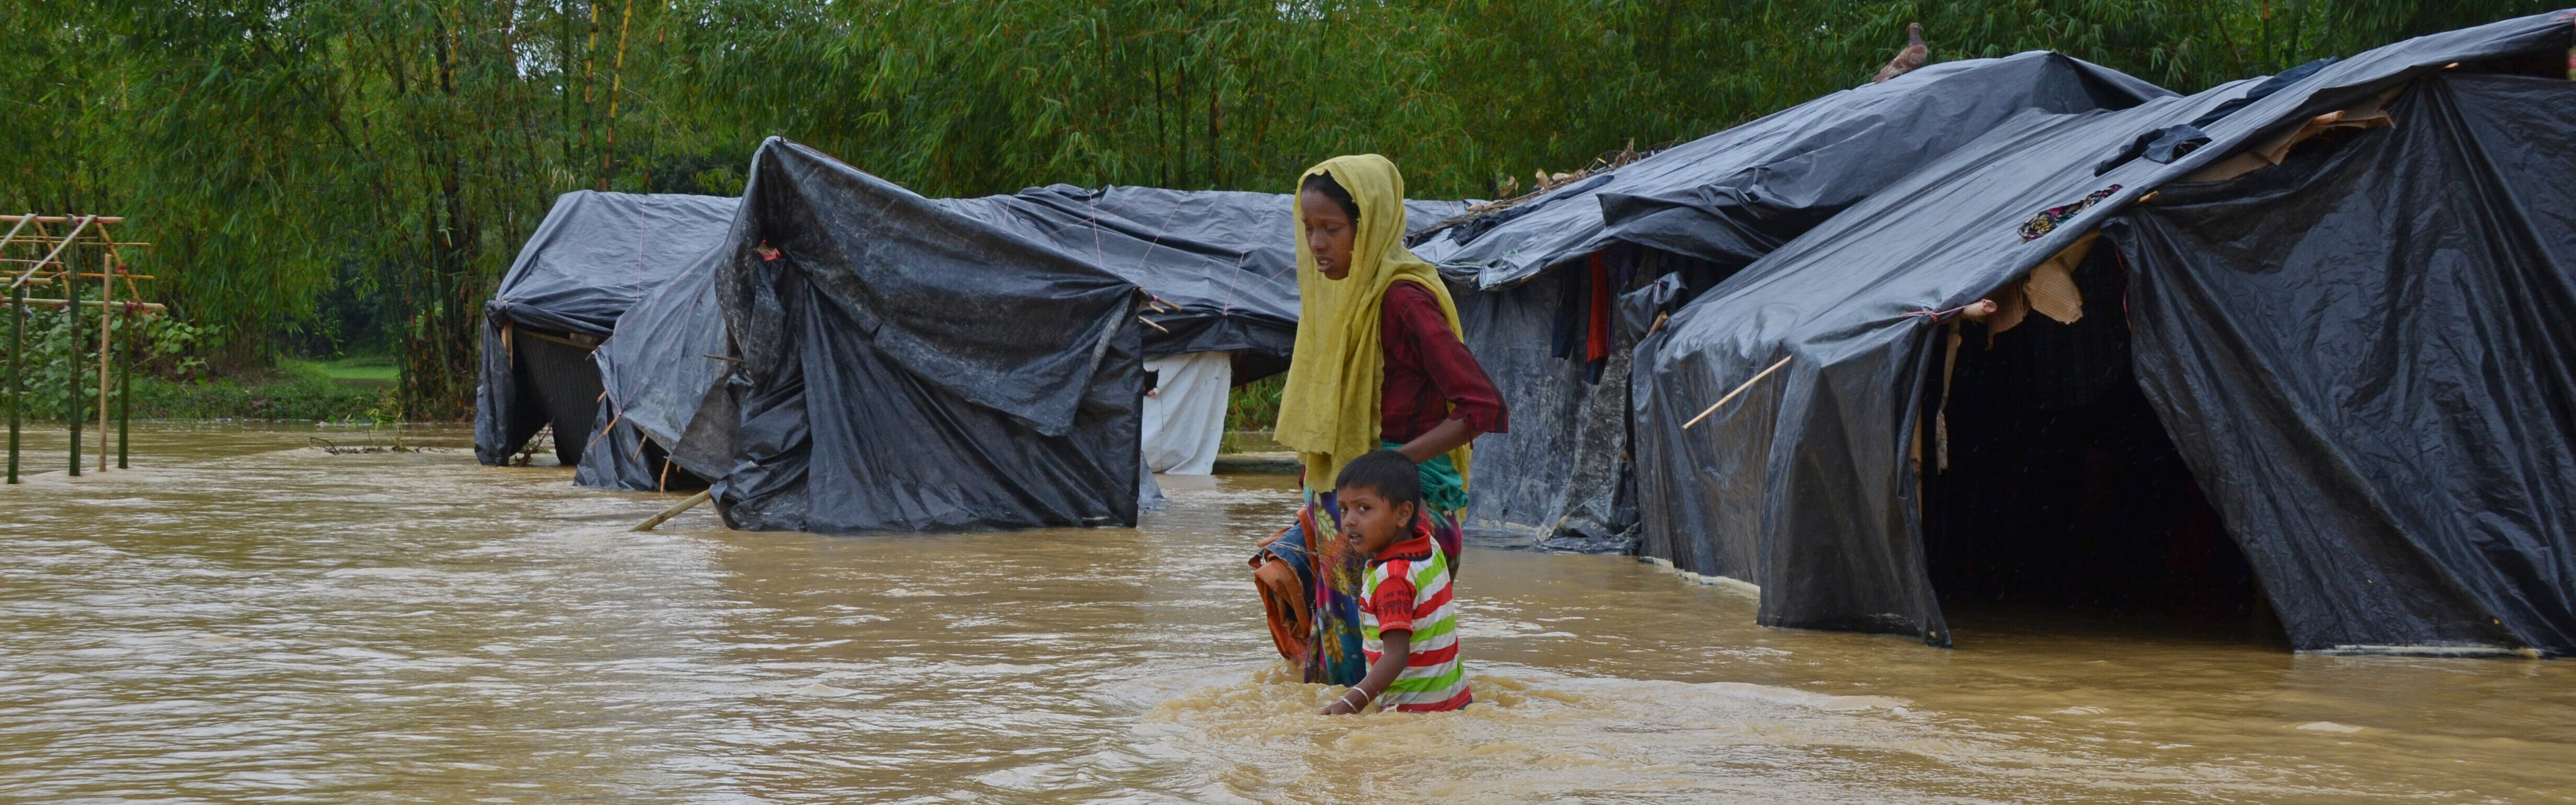 Frau & Kind inmitten eines überfluteten Flüchtlingscamps für Rohingya